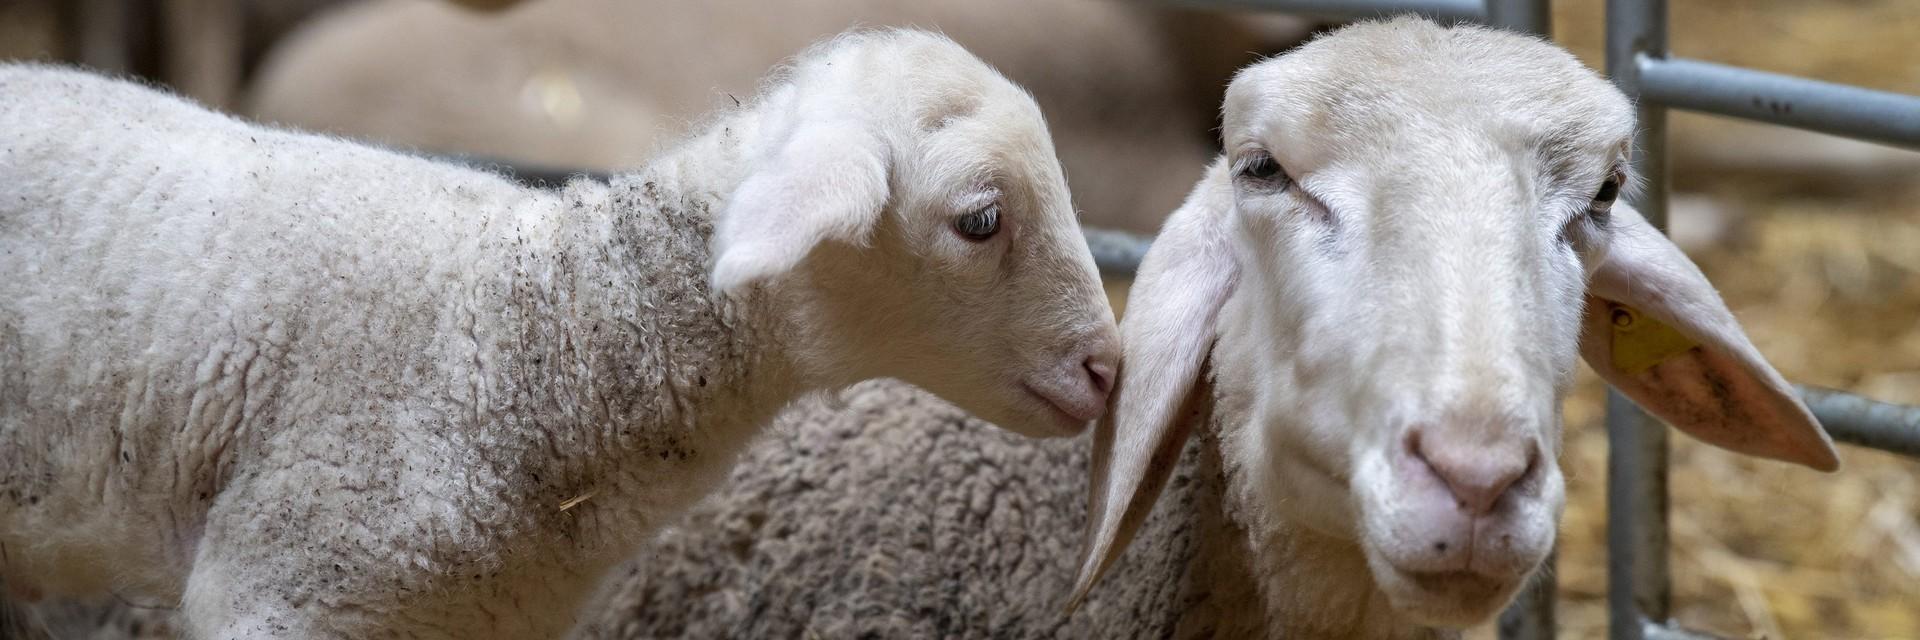 Lambs in a barn